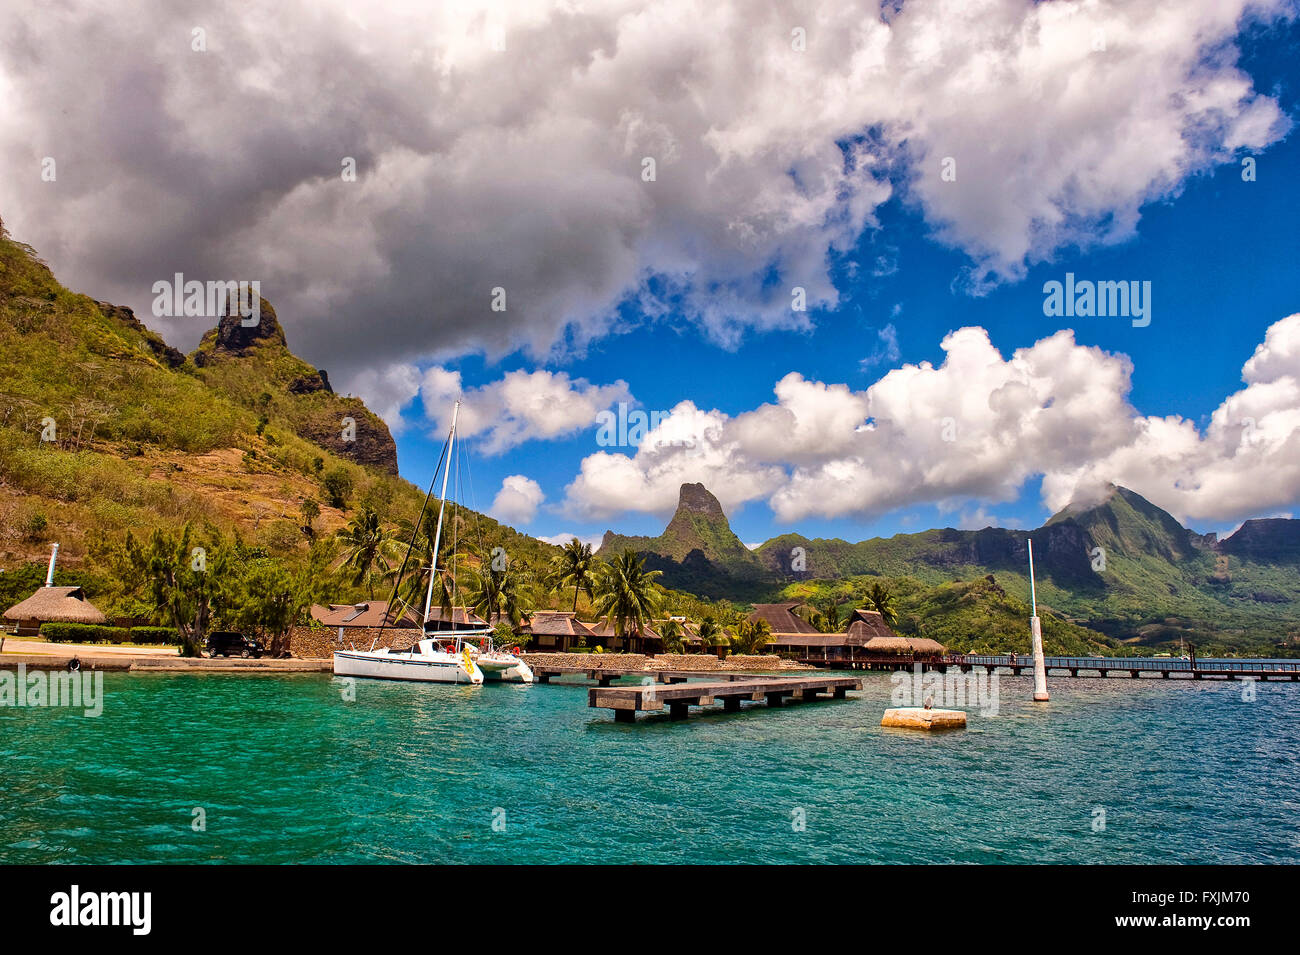 Moorea, Polinesia francese. Una cartolina angolo di Moorea, la bellissima isola Polinesiano con montagne verdi e un cielo blu. Foto Stock